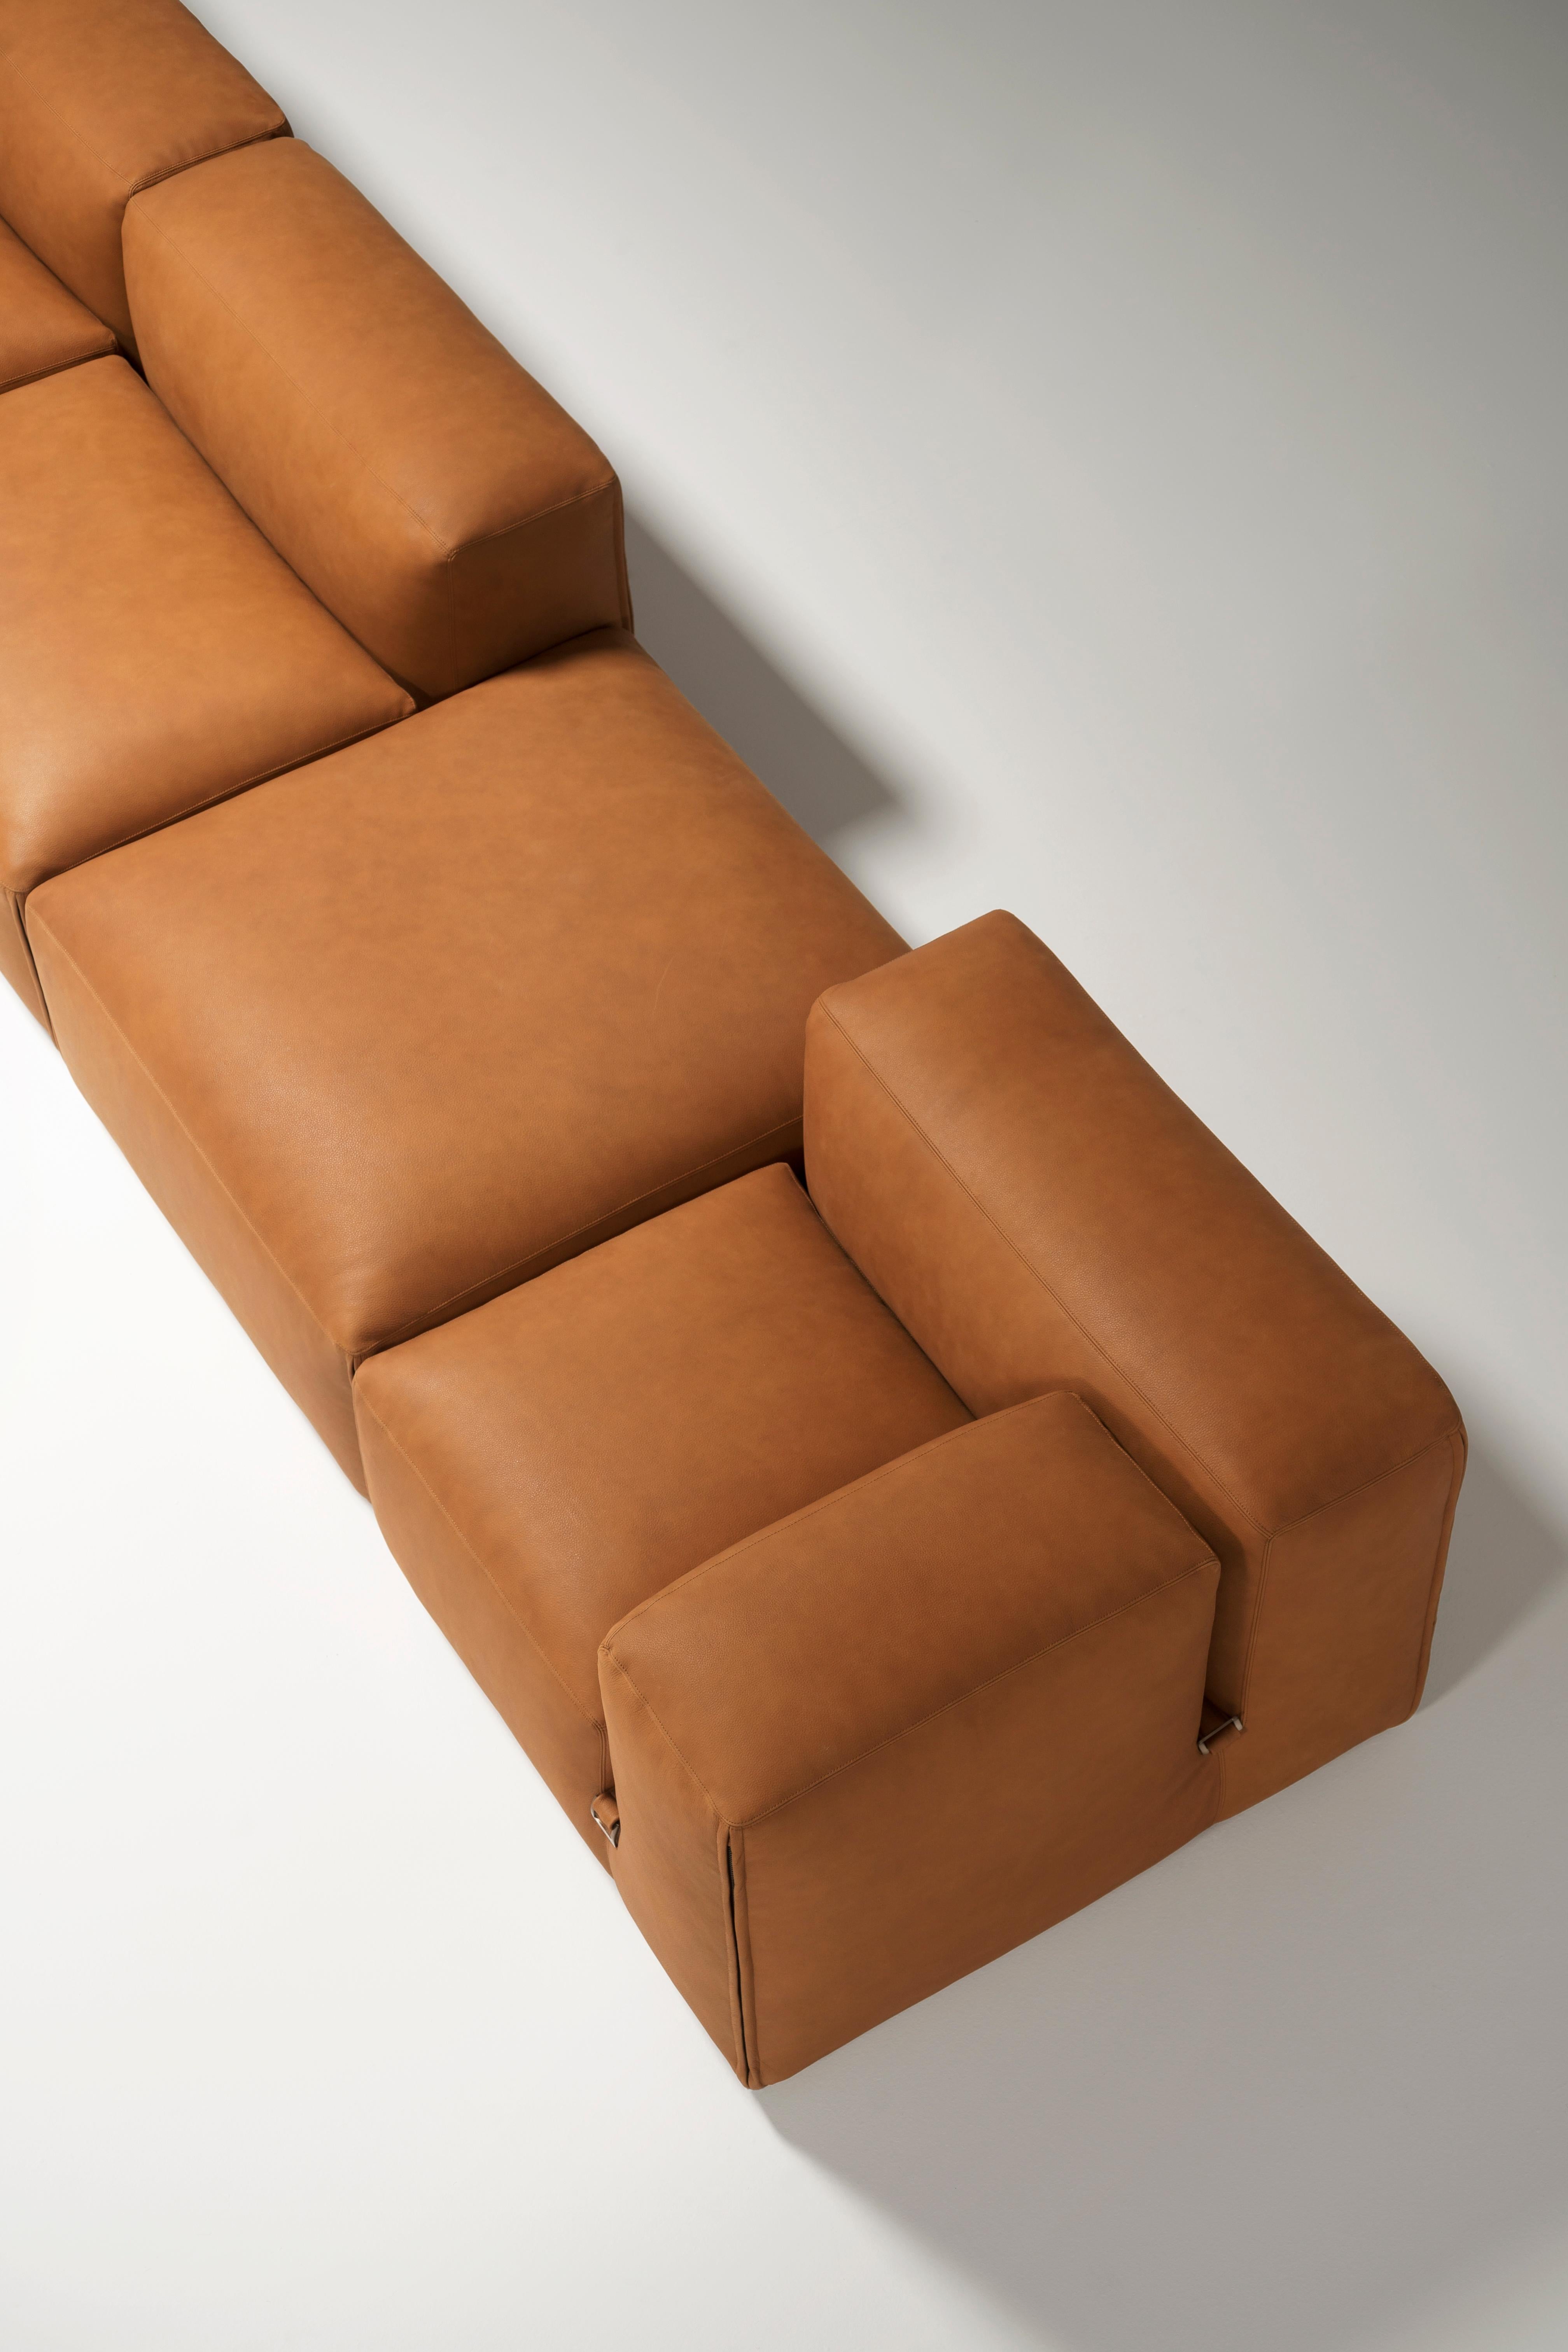 Upholstery Tacchini Le Mura Modular Sofa designed by Mario Bellini